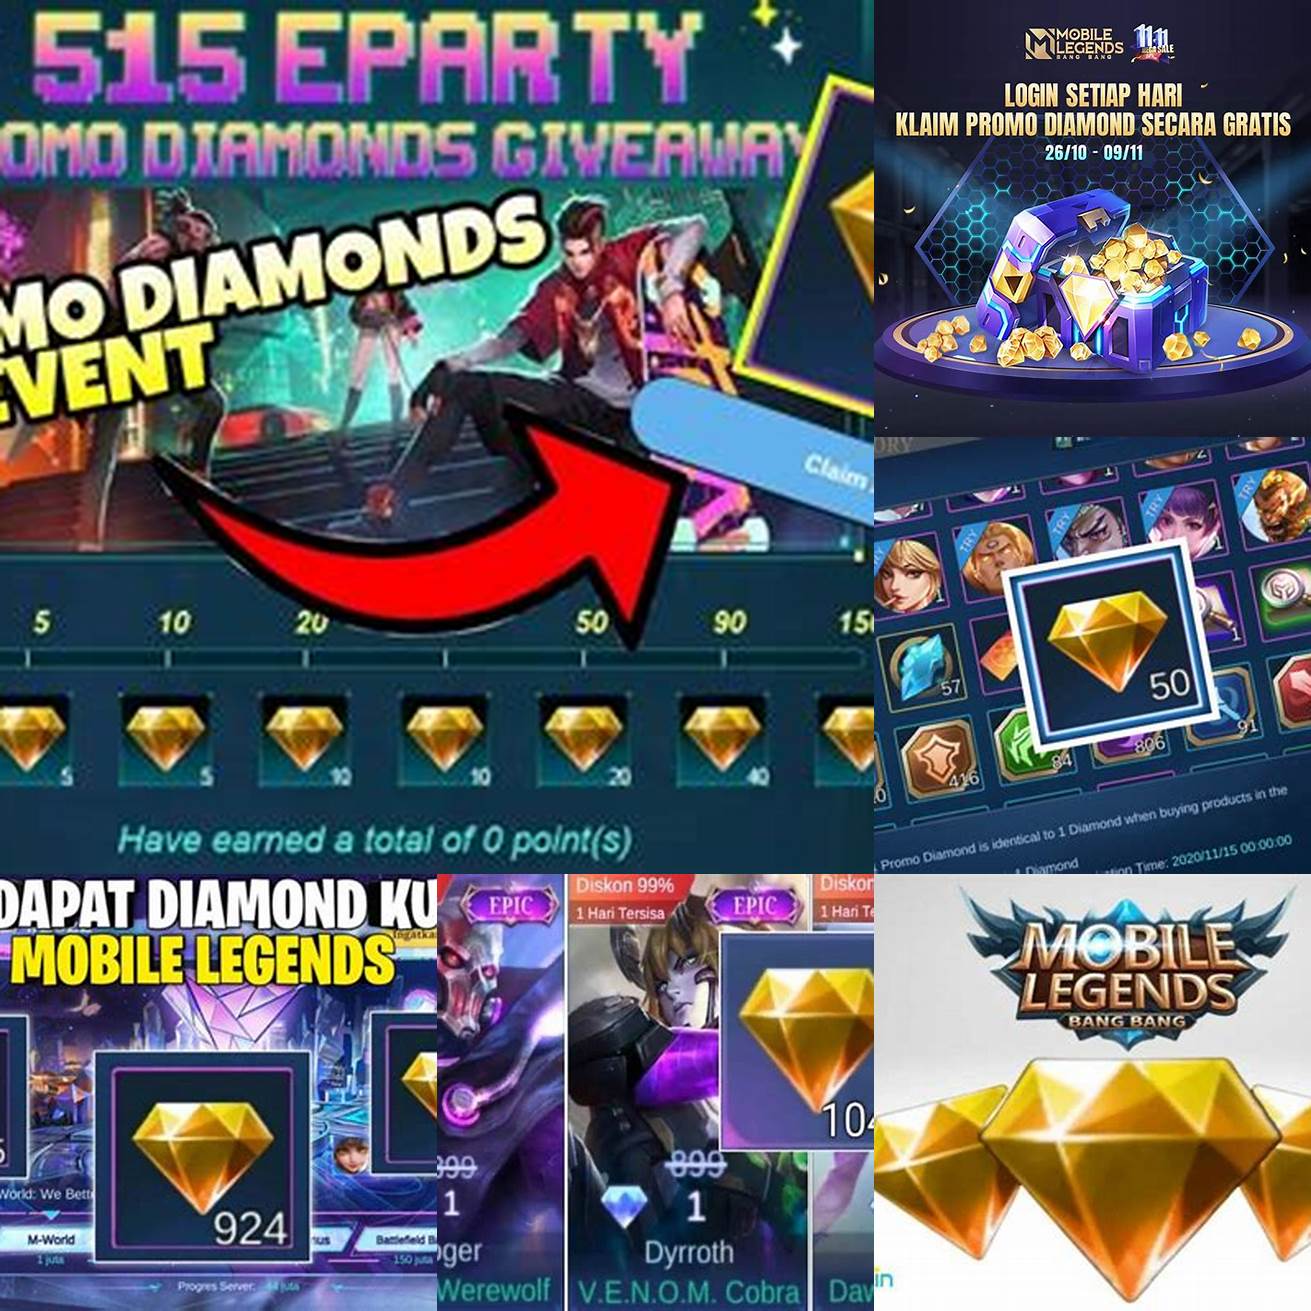 Ikuti event yang diselenggarakan oleh developer untuk mendapatkan diamond kuning secara gratis